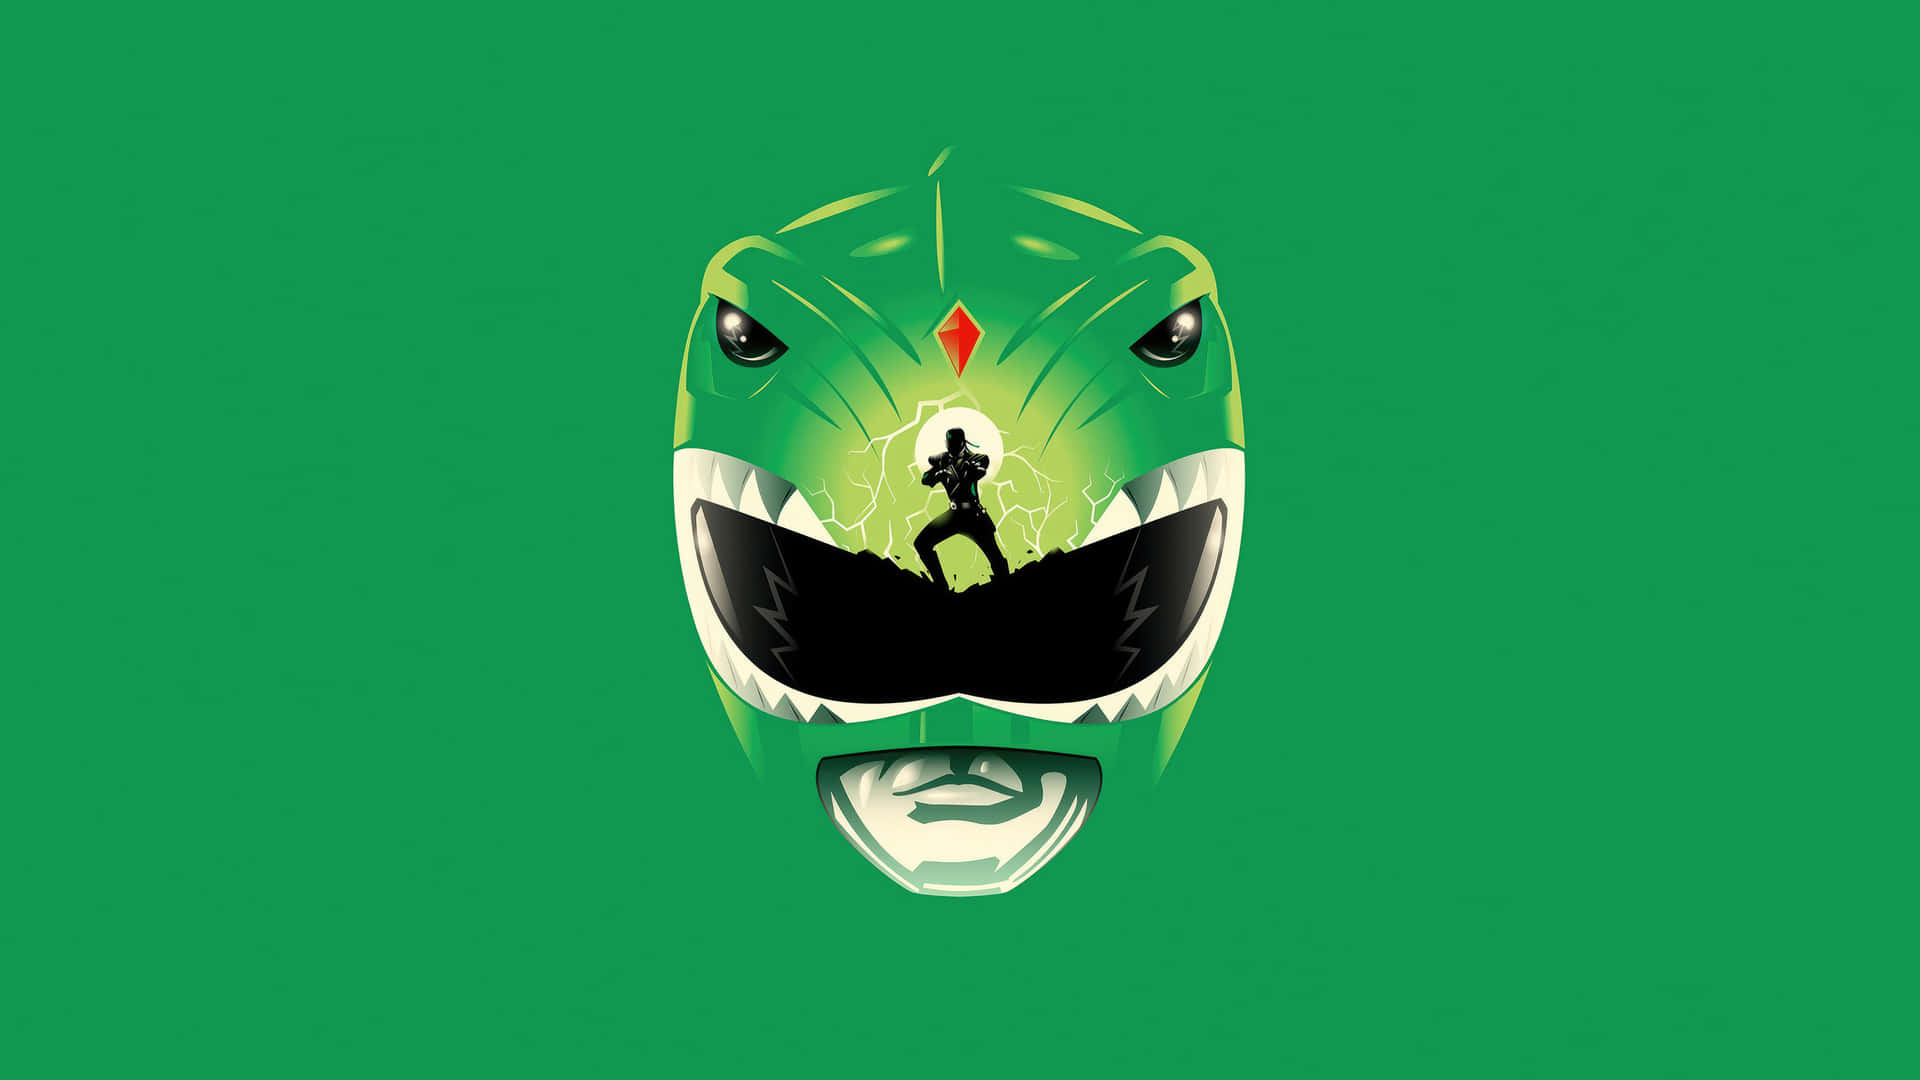 Green Ranger Helmet Artwork Wallpaper